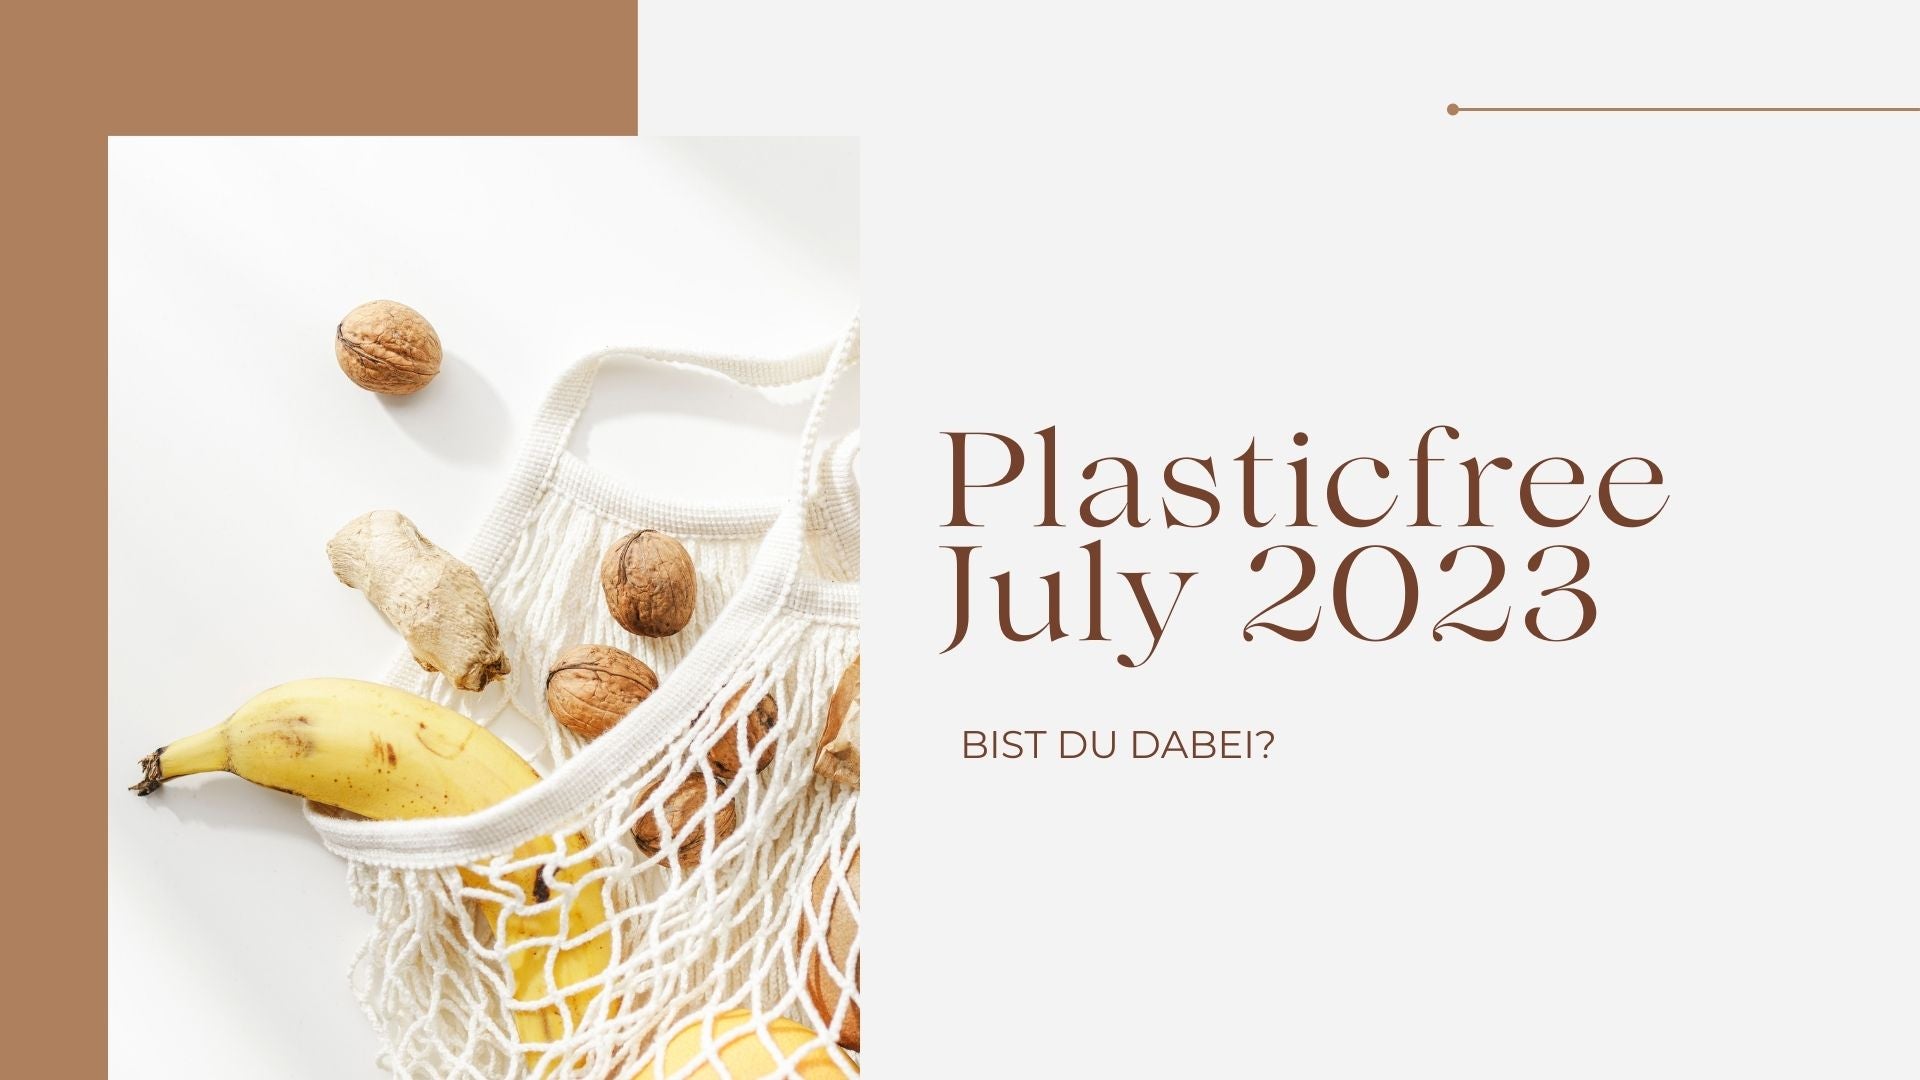 Plasticfree July 2023: Bist du dabei?